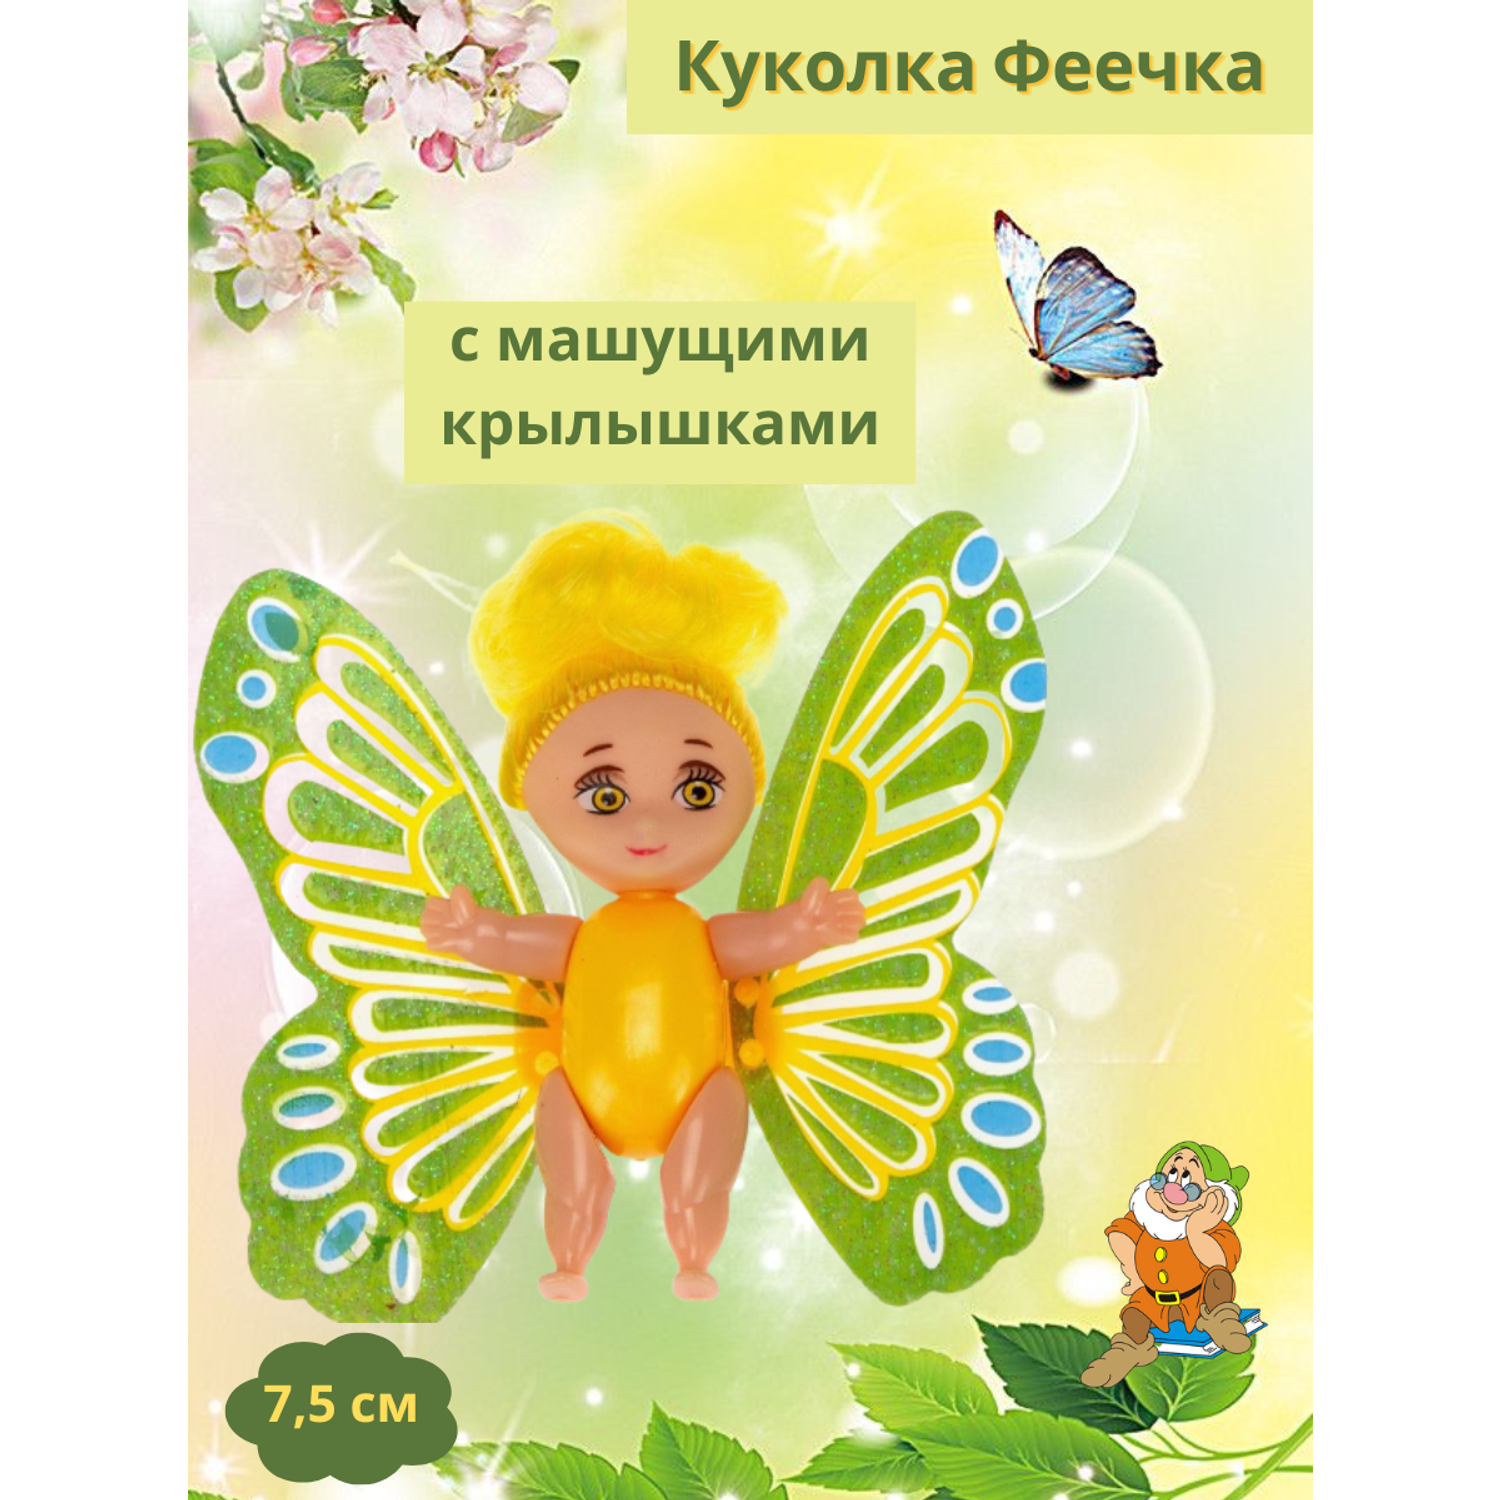 Мини кукла подвижная EstaBella Фея с машущими крылышками 7.5 см желтая 89292 - фото 2